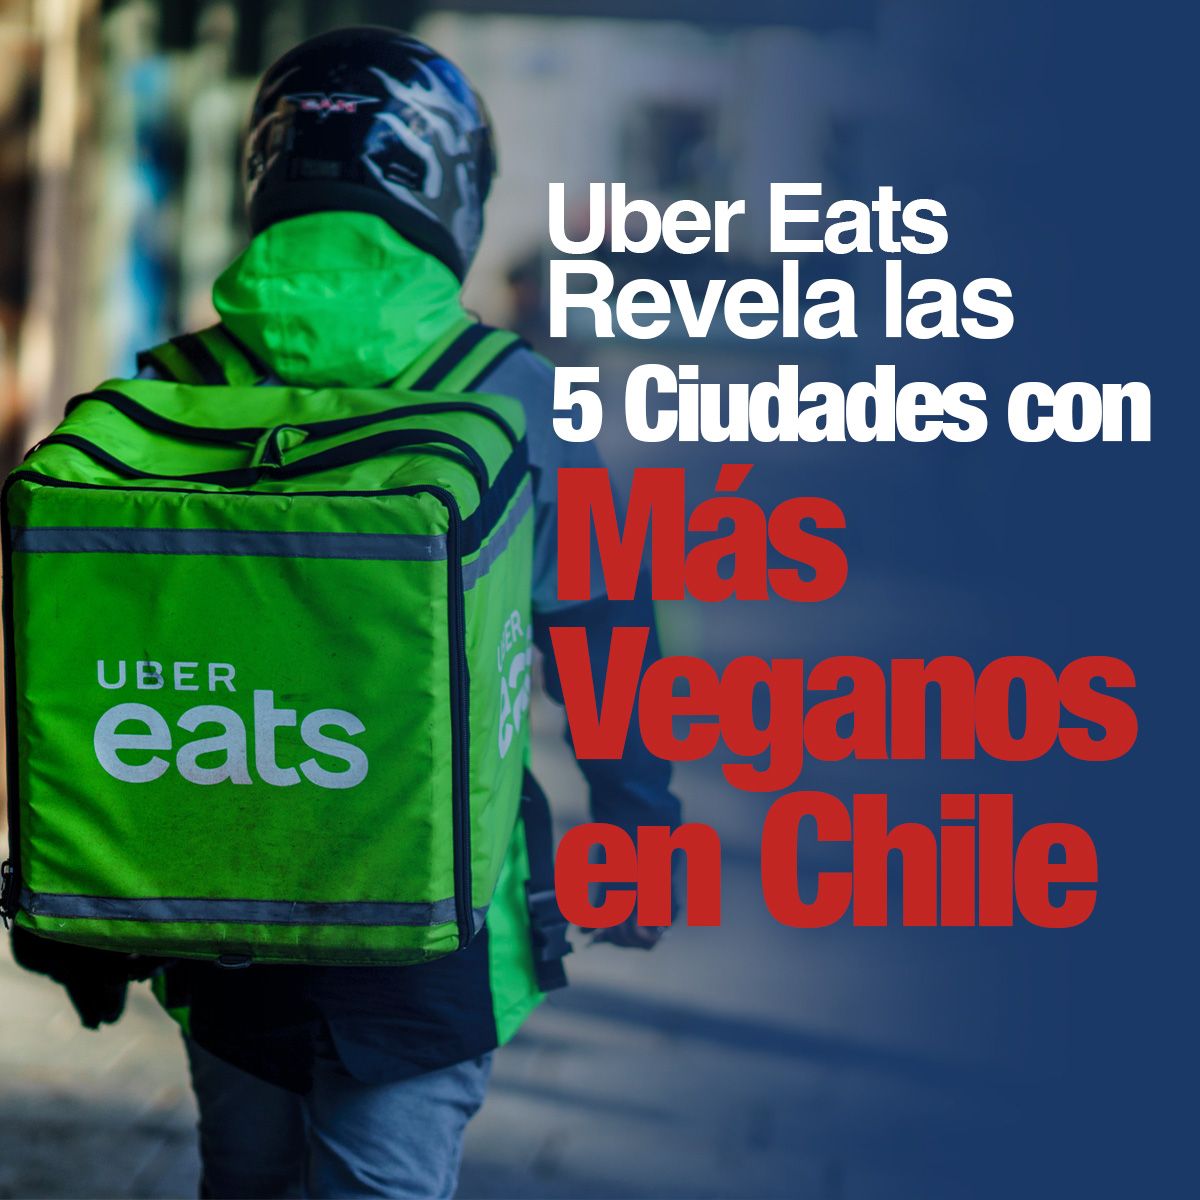 Uber Eats Revela las 5 Ciudades con Más Veganos en Chile